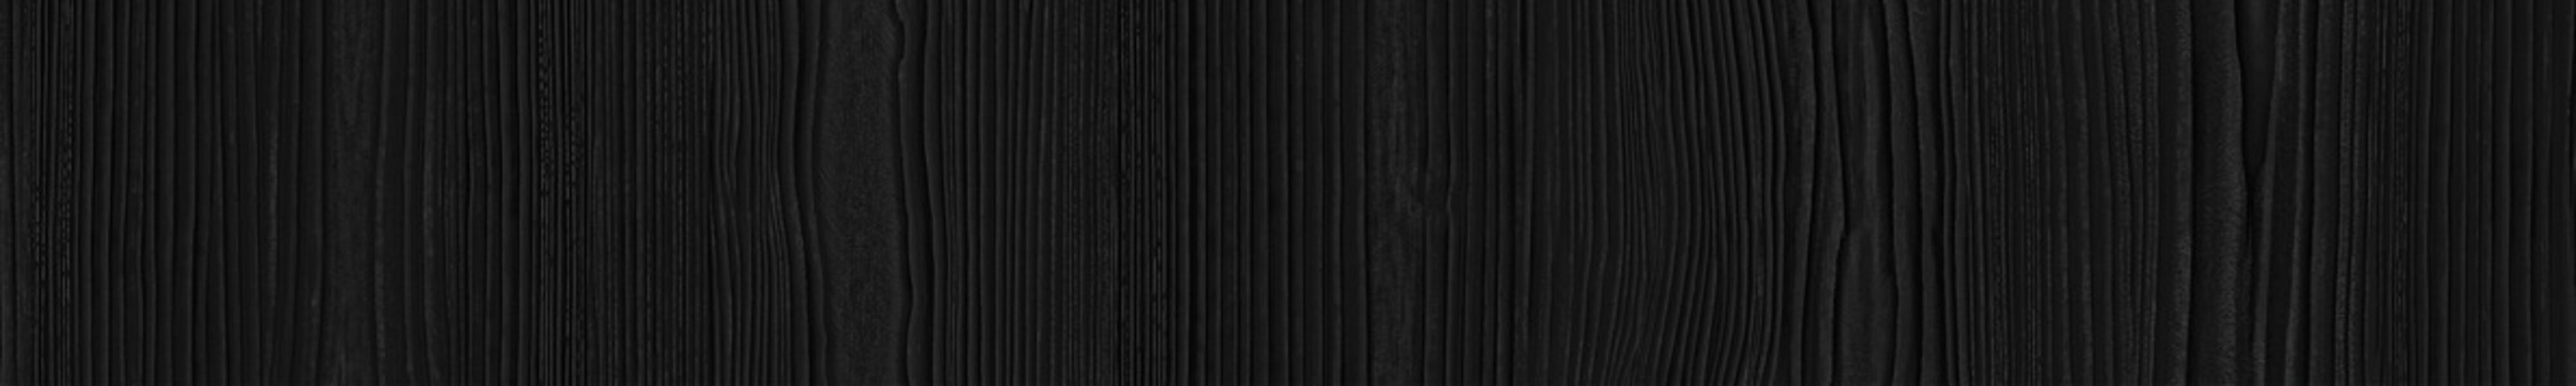 skai® colore structure black              0,55 1420